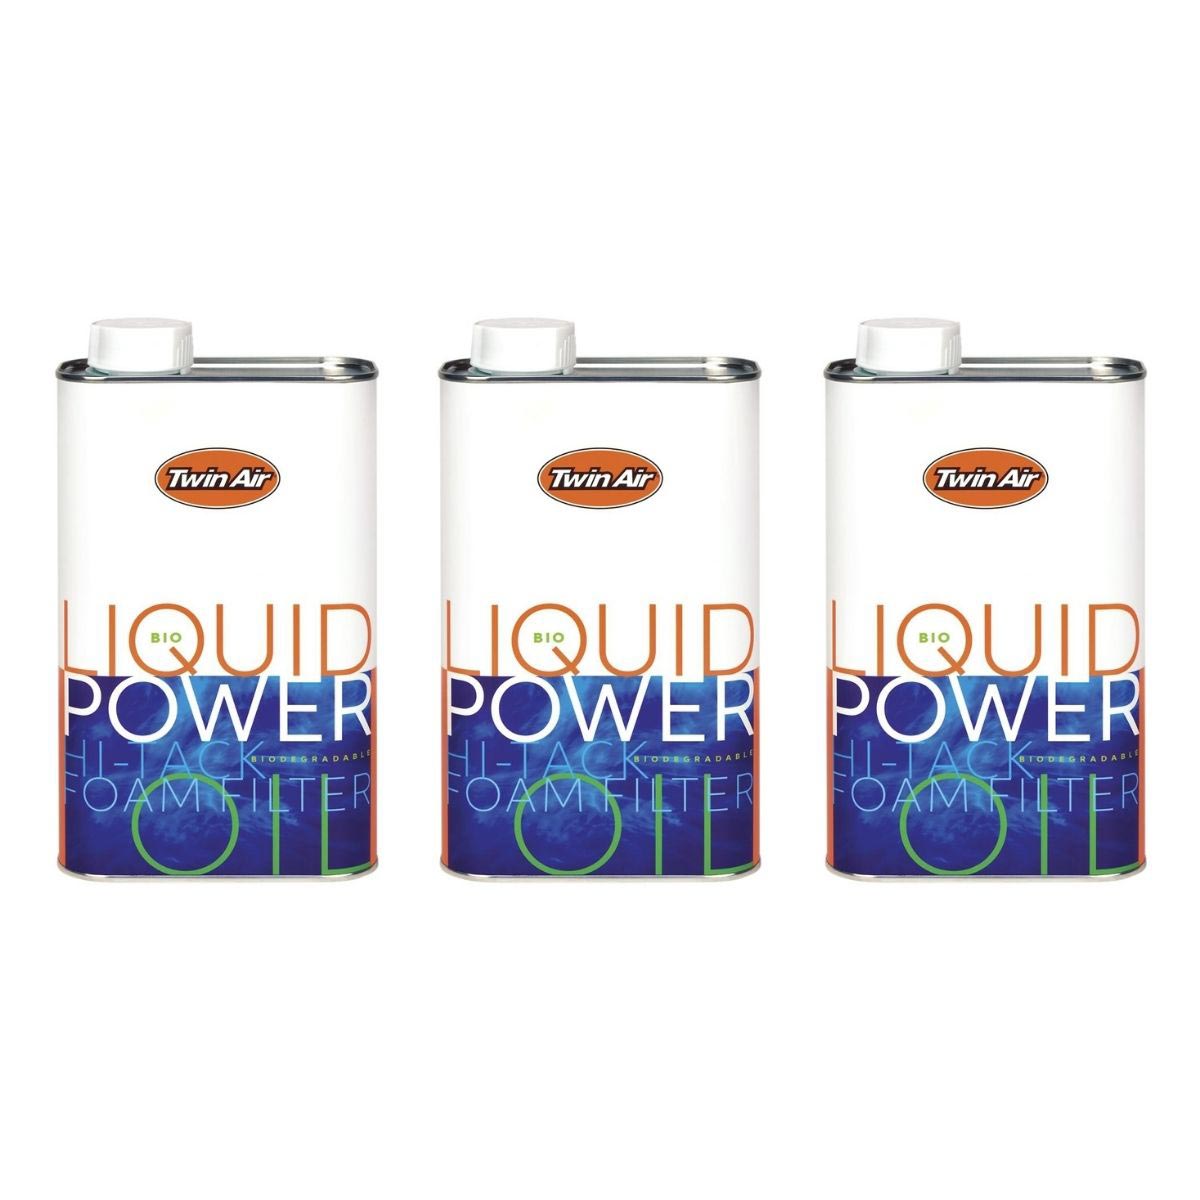 Twin Air Olio Filtro Aria Liquid Power Bio Set di 3, 1 L ciascuno